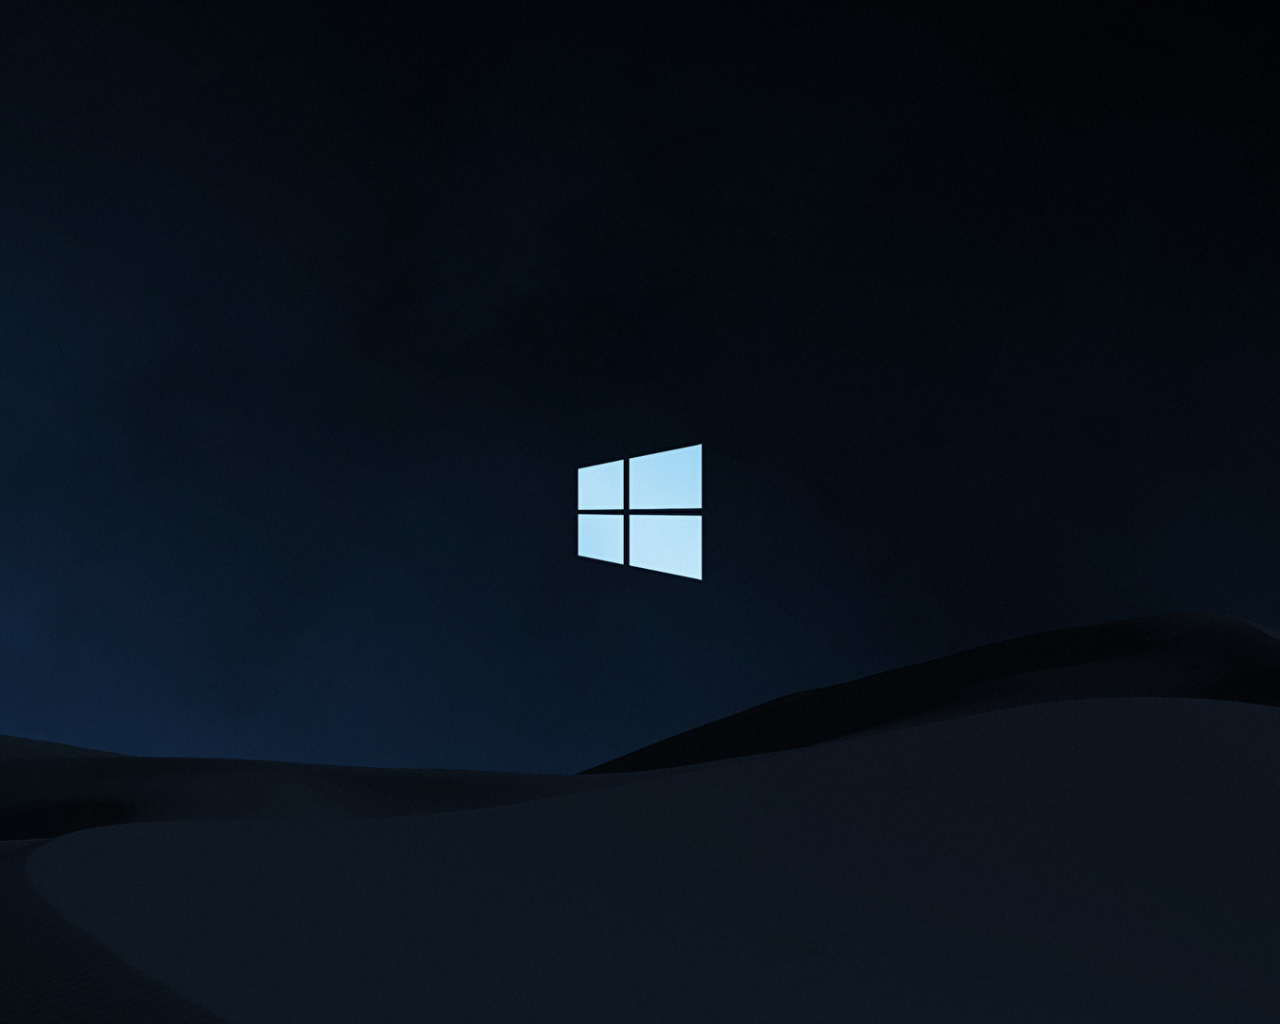 1280x1024 Windows 10 Clean Dark 1280x1024 Resolution Background